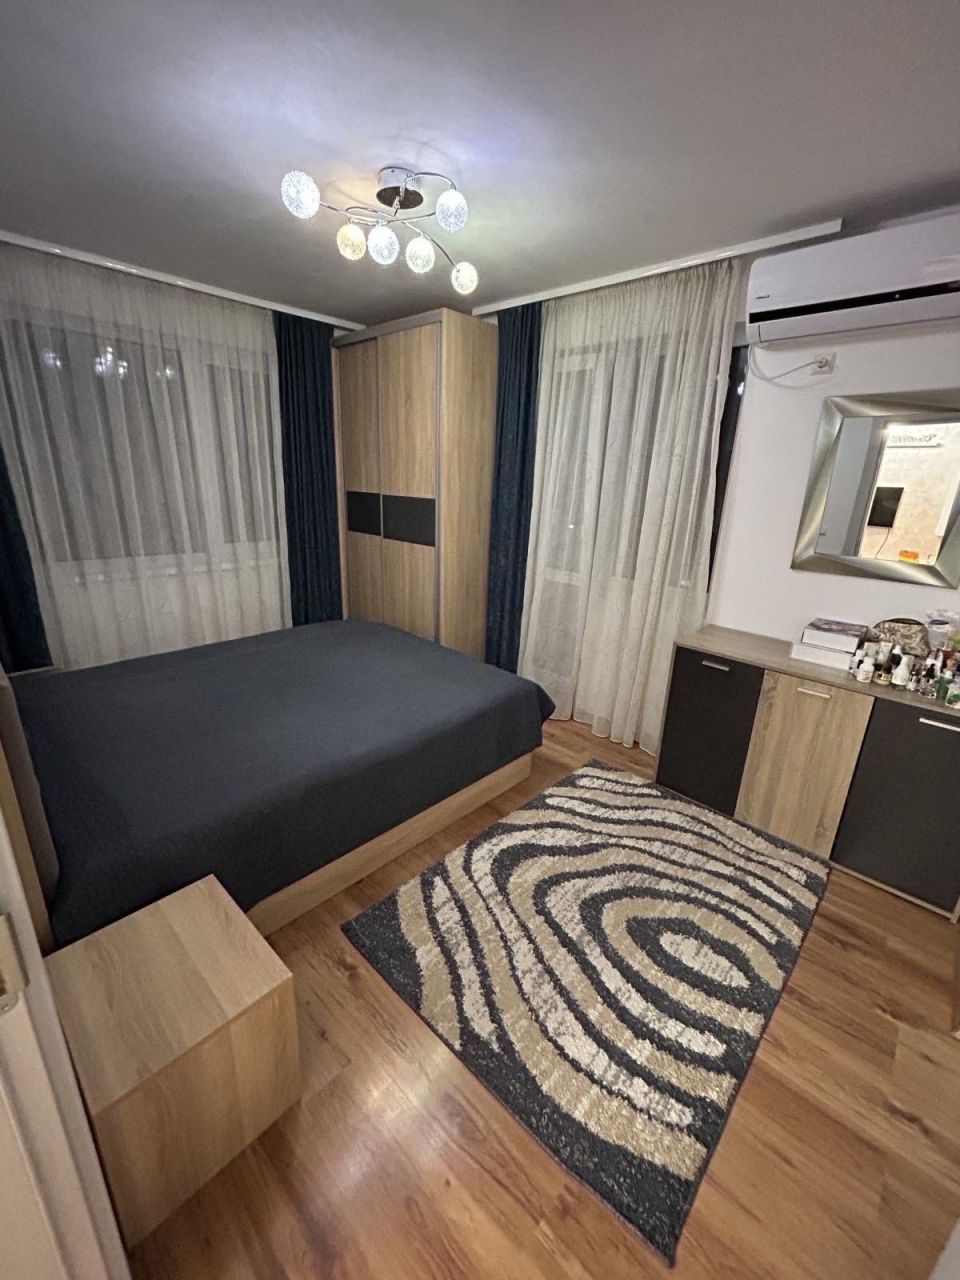 Apartment in Pomorie, Bulgaria, 110 sq.m - picture 1